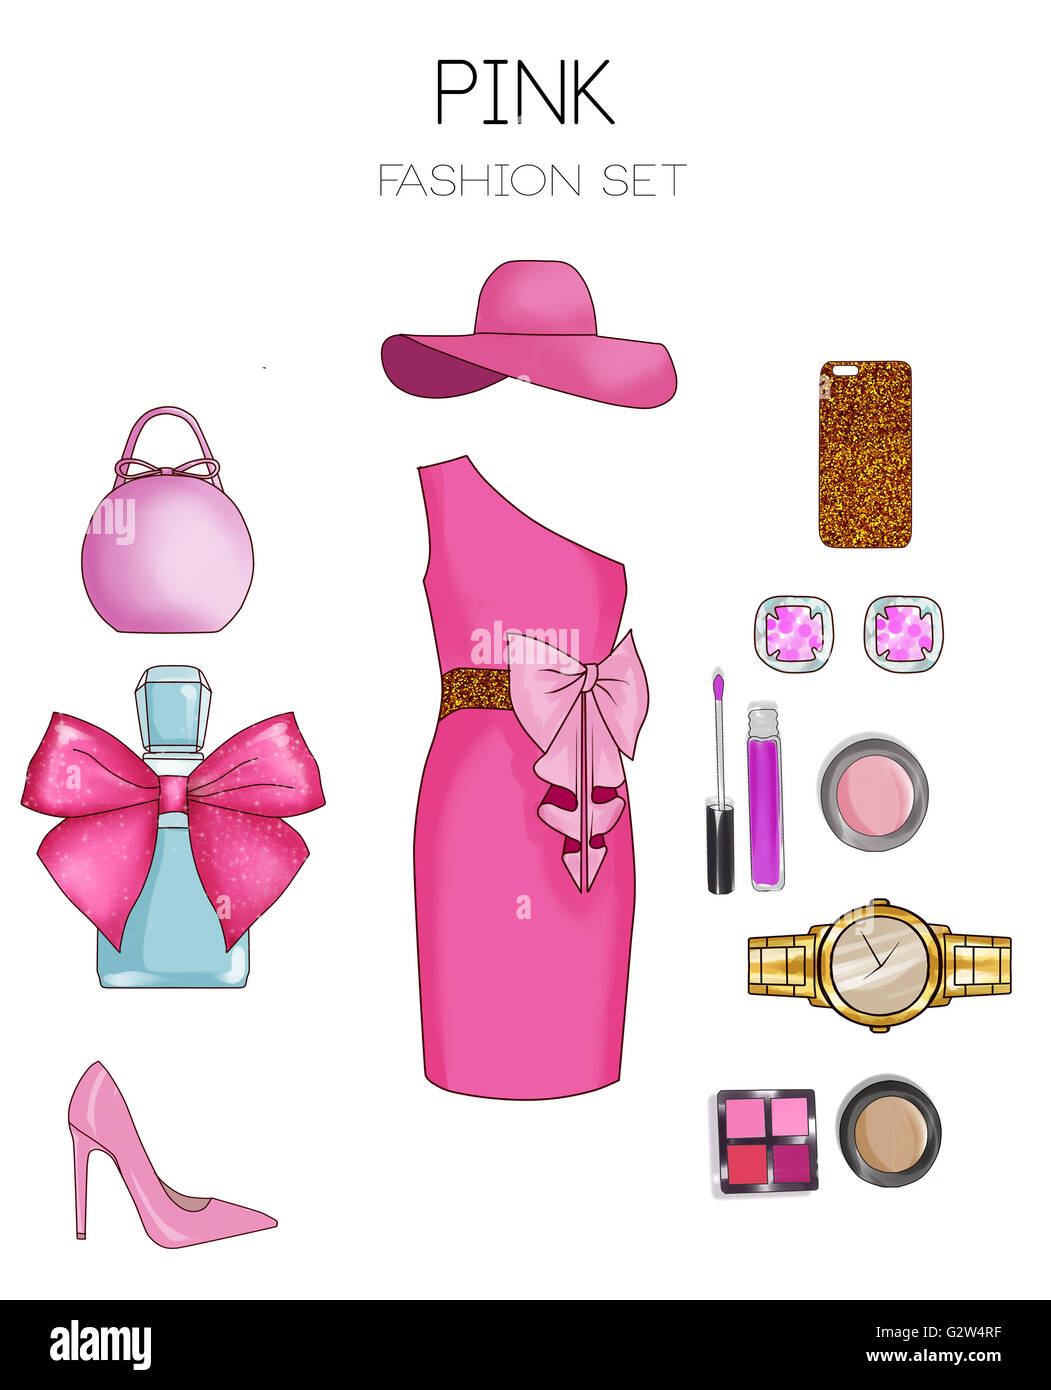 Juego de moda ropa de mujer y accesorios - vestido rosado, bolsa,  stilettos, cosméticos y joyas Fotografía de stock - Alamy